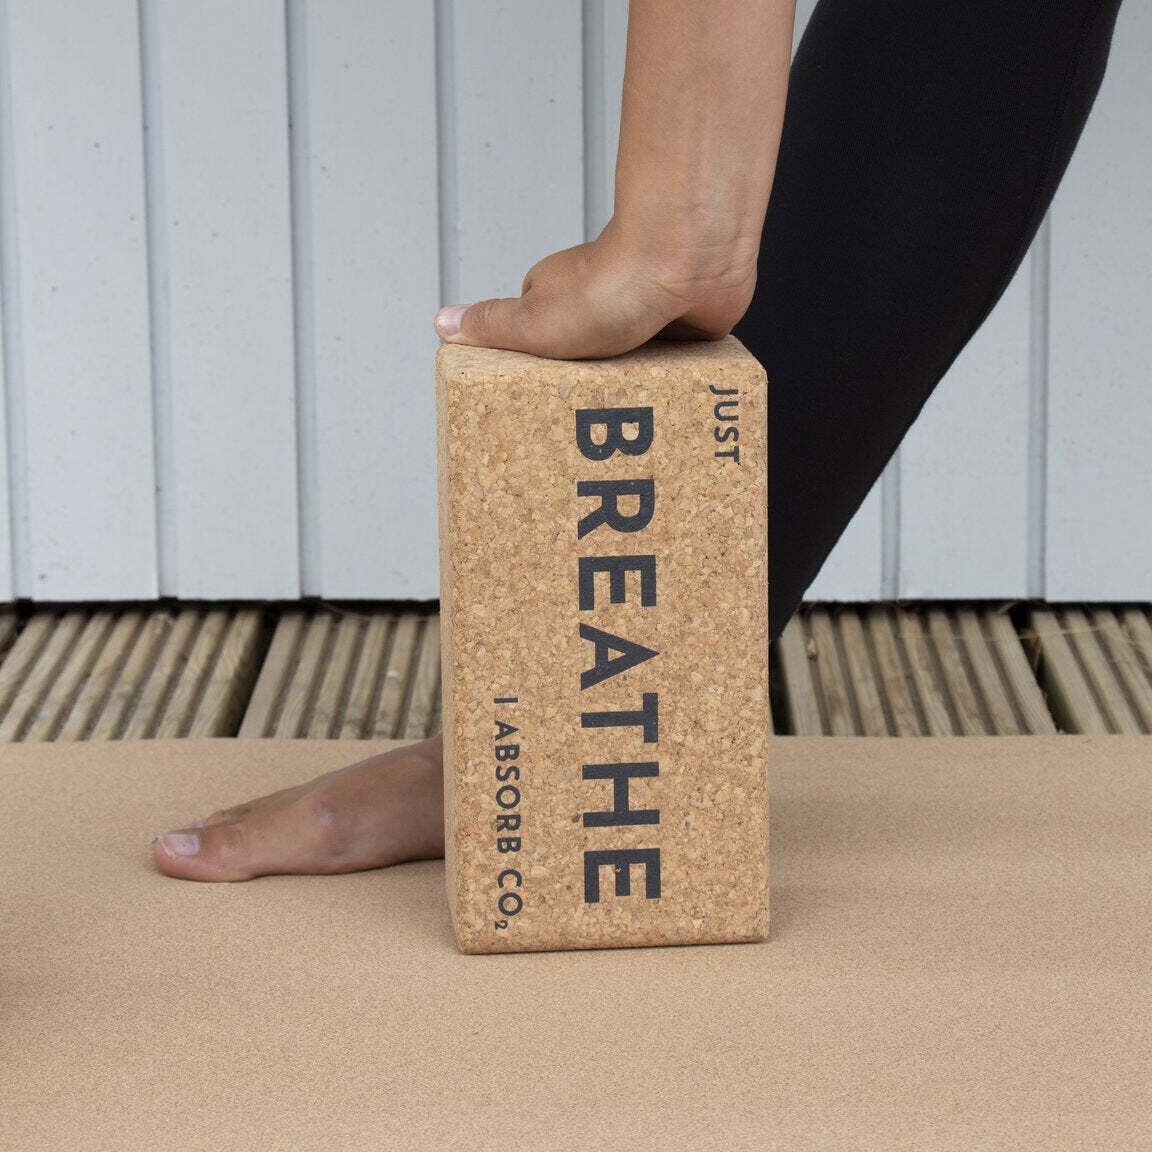 Yoga Block - Breathe